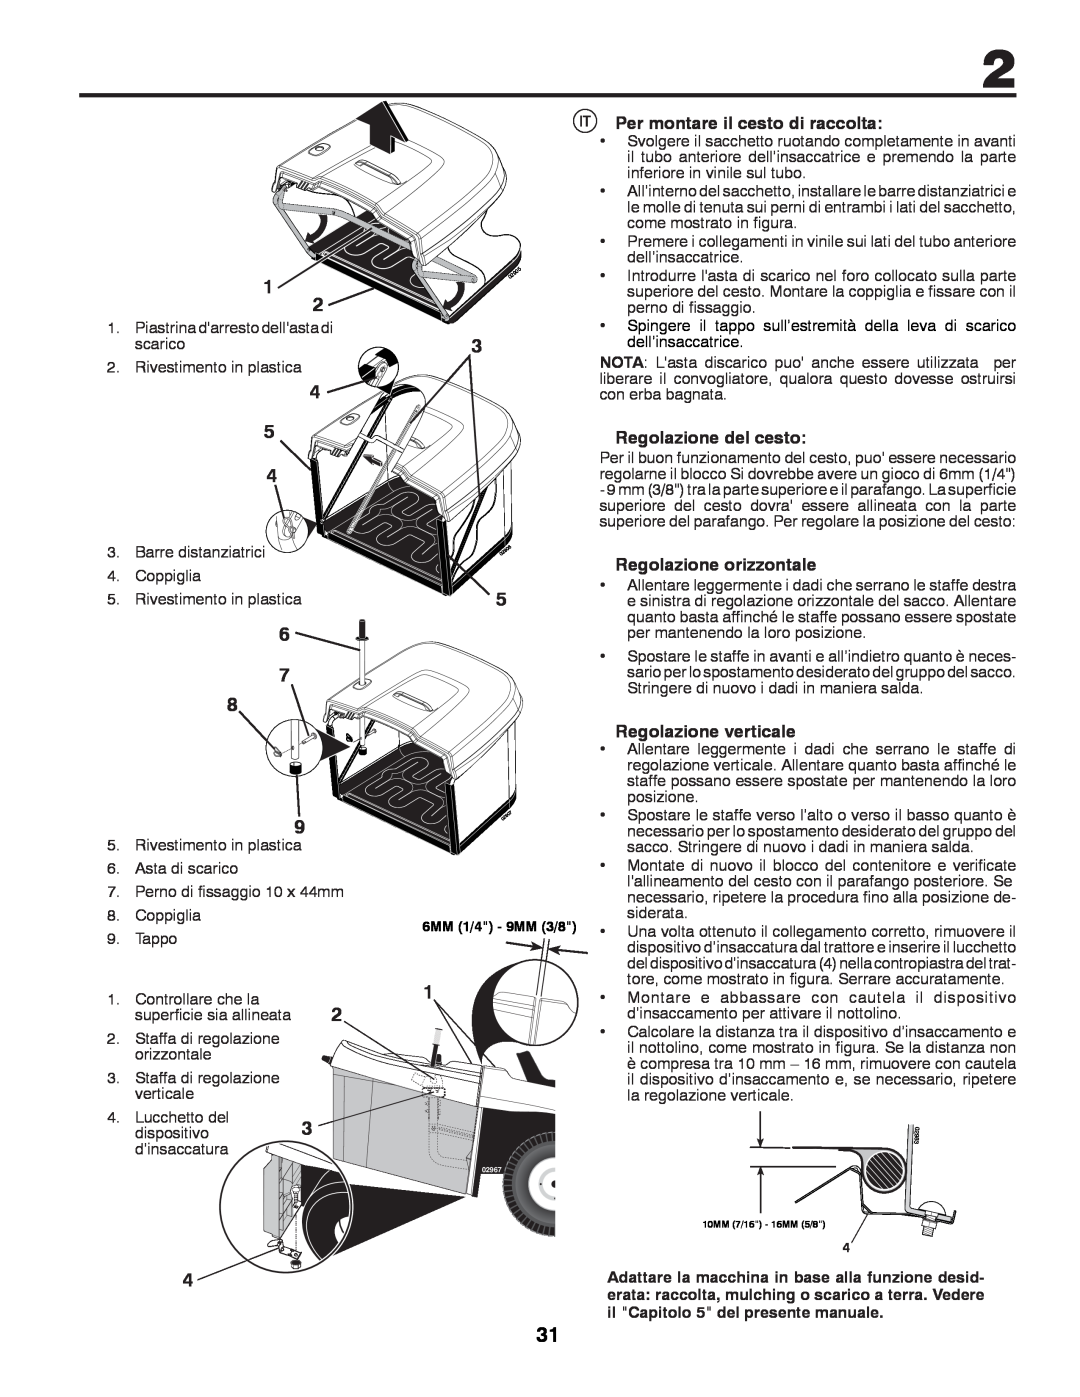 Partner Tech P200107HRB instruction manual Per montare il cesto di raccolta, Regolazione del cesto, Regolazione orizzontale 